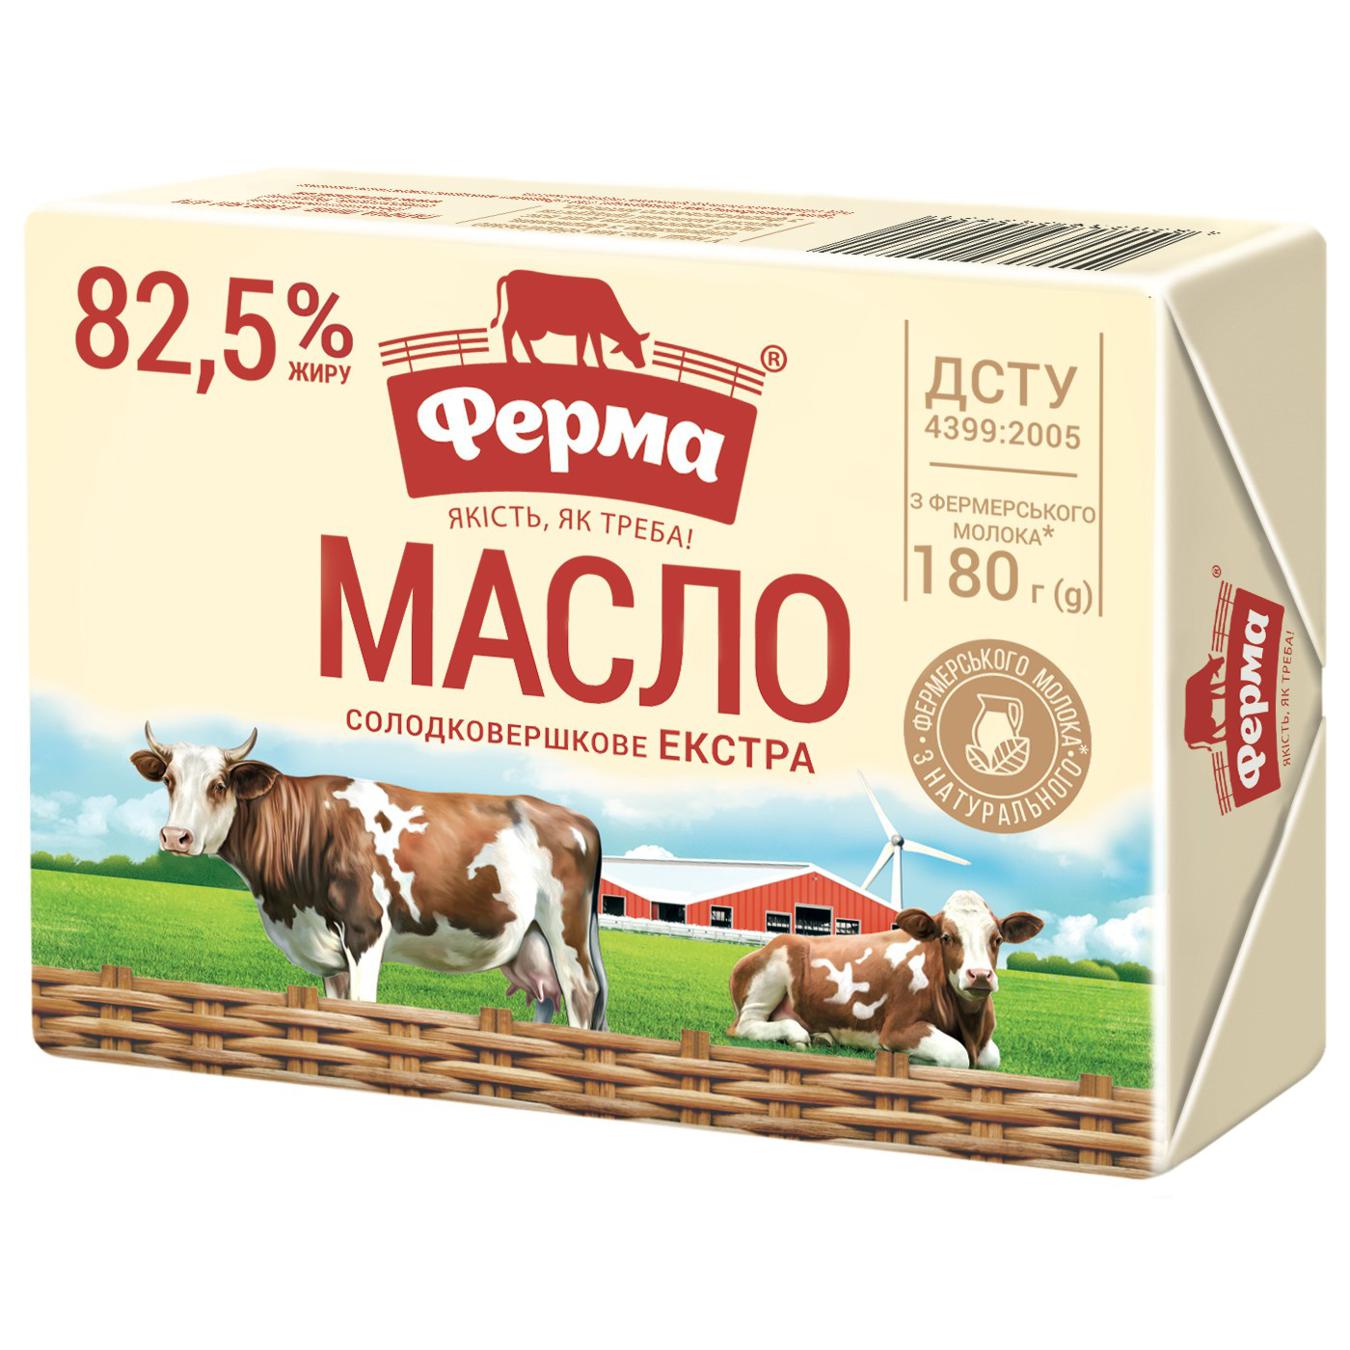 Масло Ферма Экстра сладкосливочное 82.5% 180г